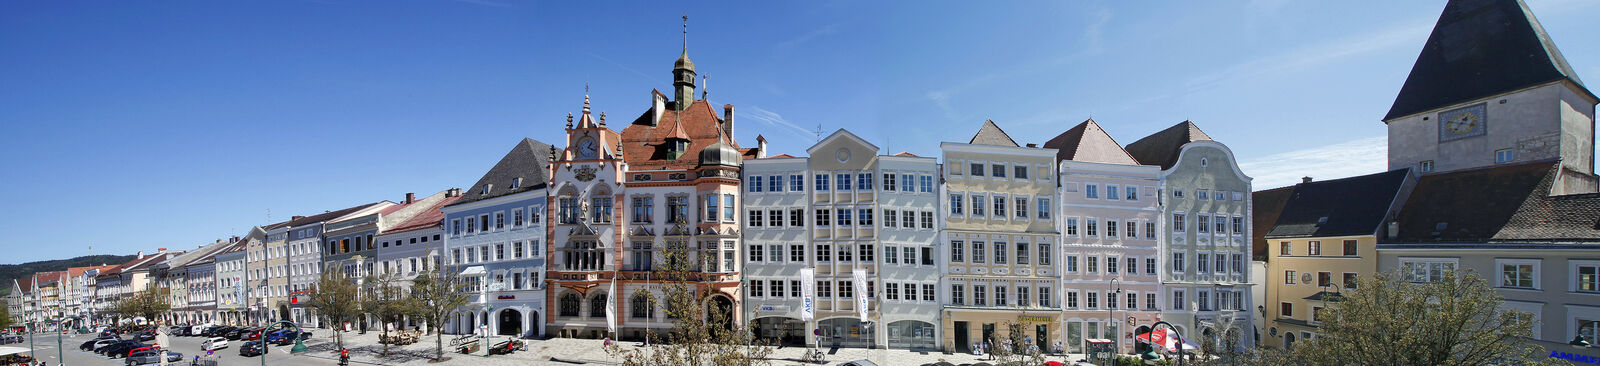 Kleine Historische Städte in Österreich